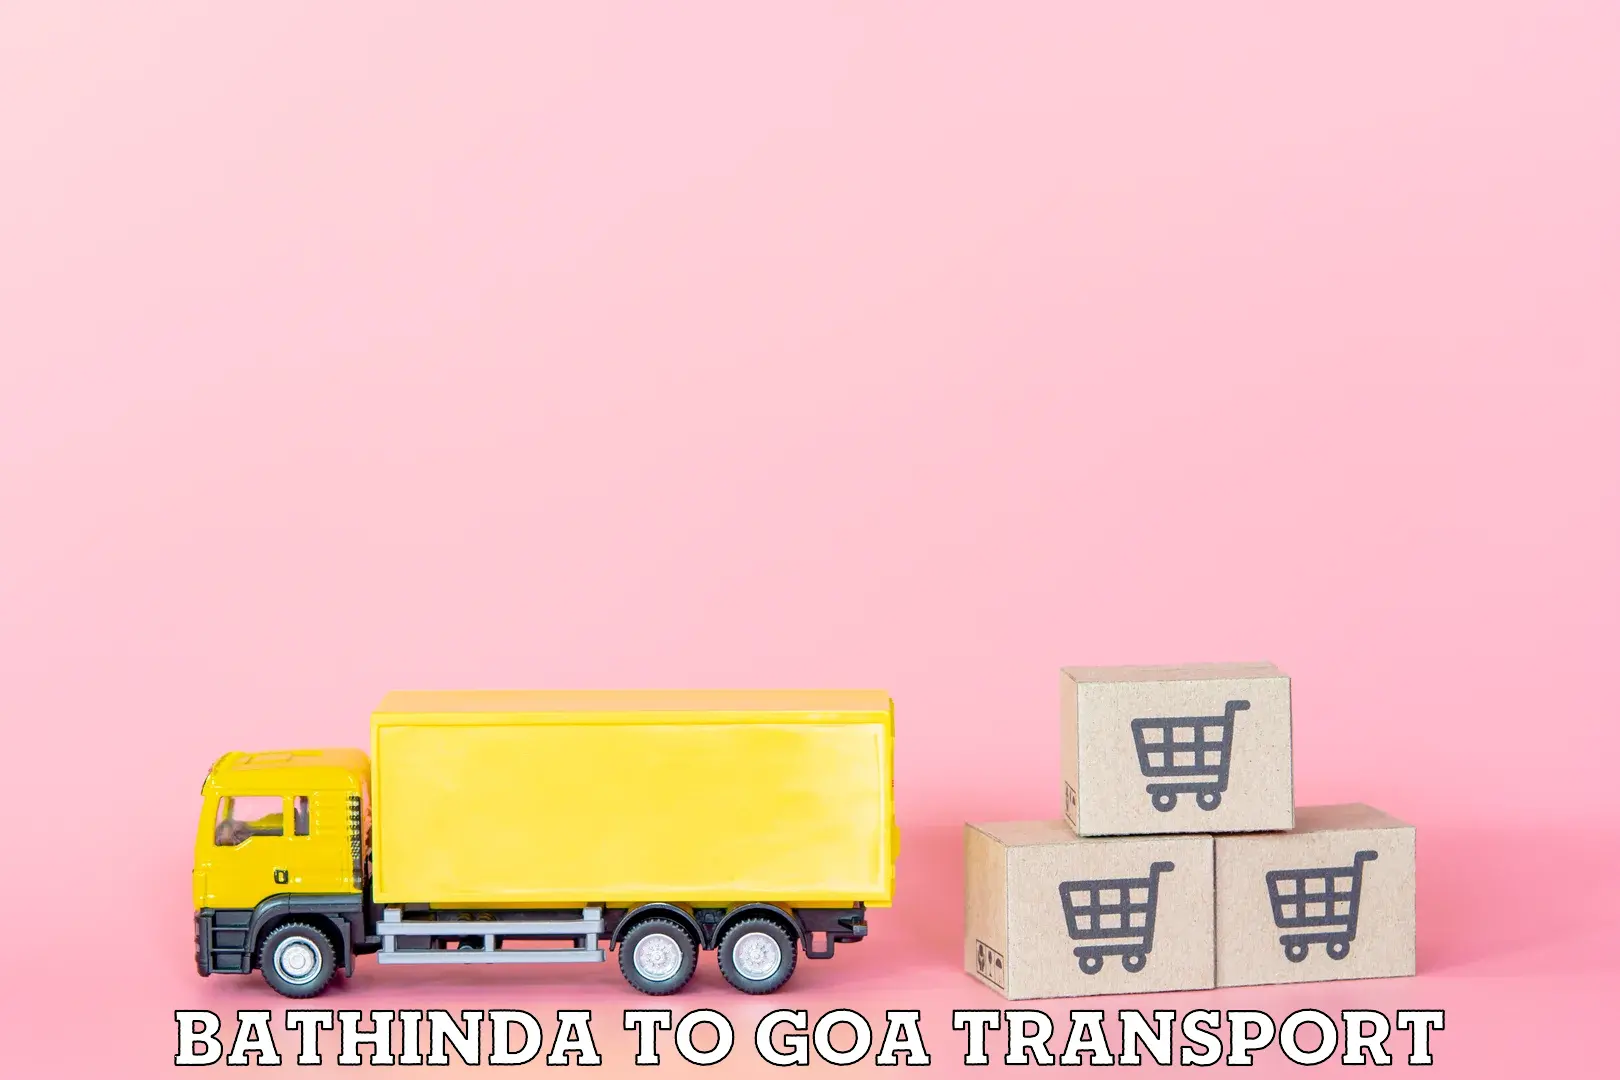 Land transport services Bathinda to NIT Goa